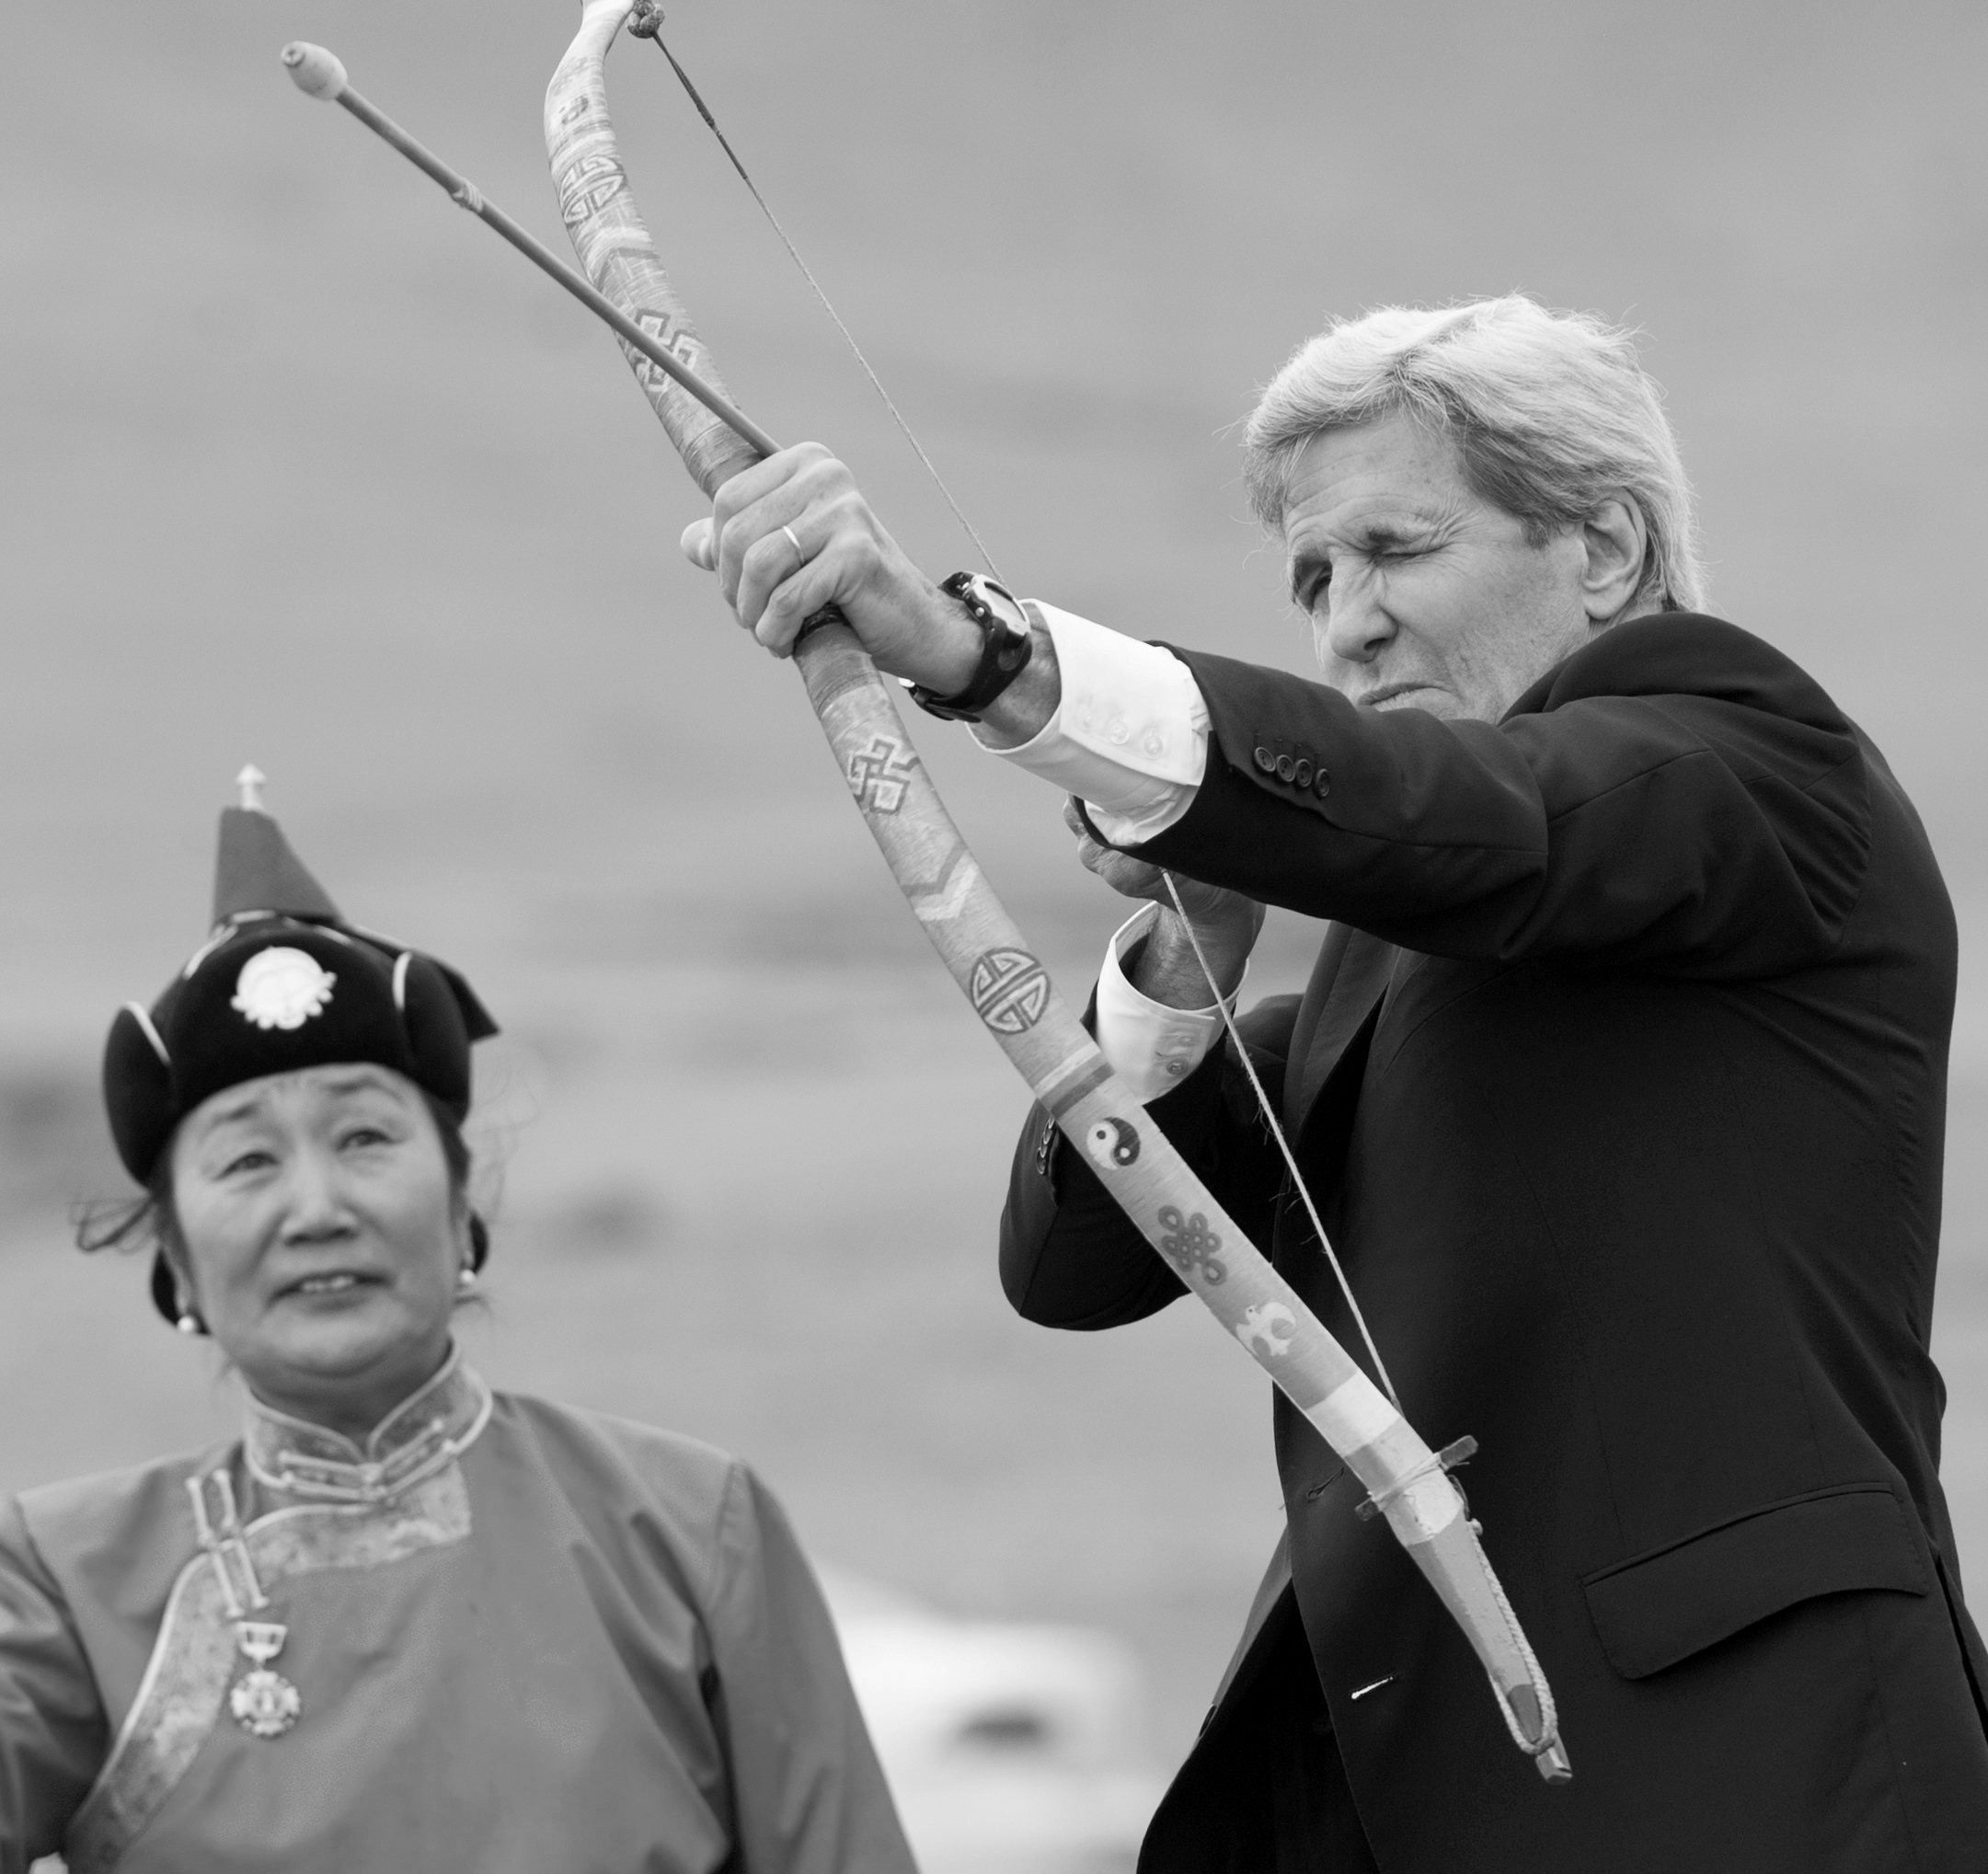 5日,克里在蒙古国那达慕活动上射箭